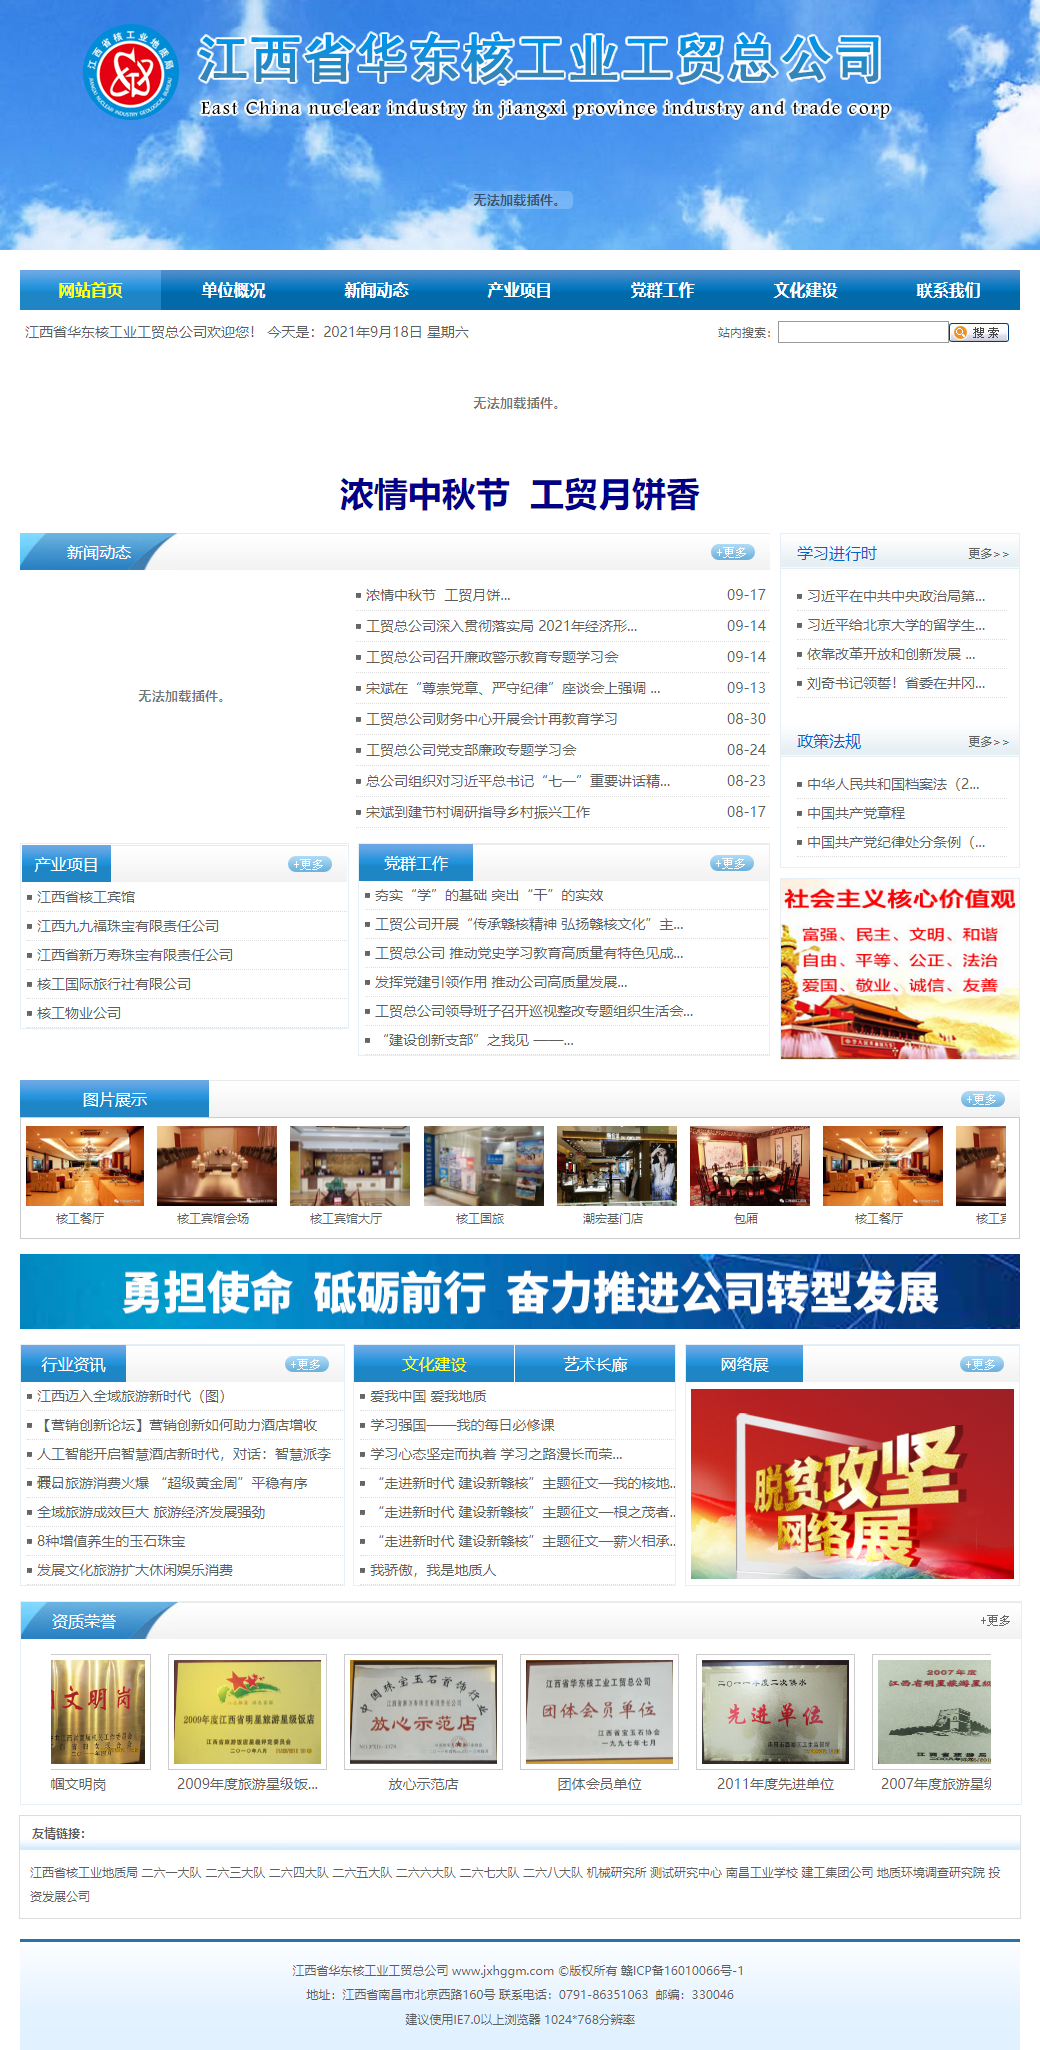 江西省华东核工业工贸总公司网站案例